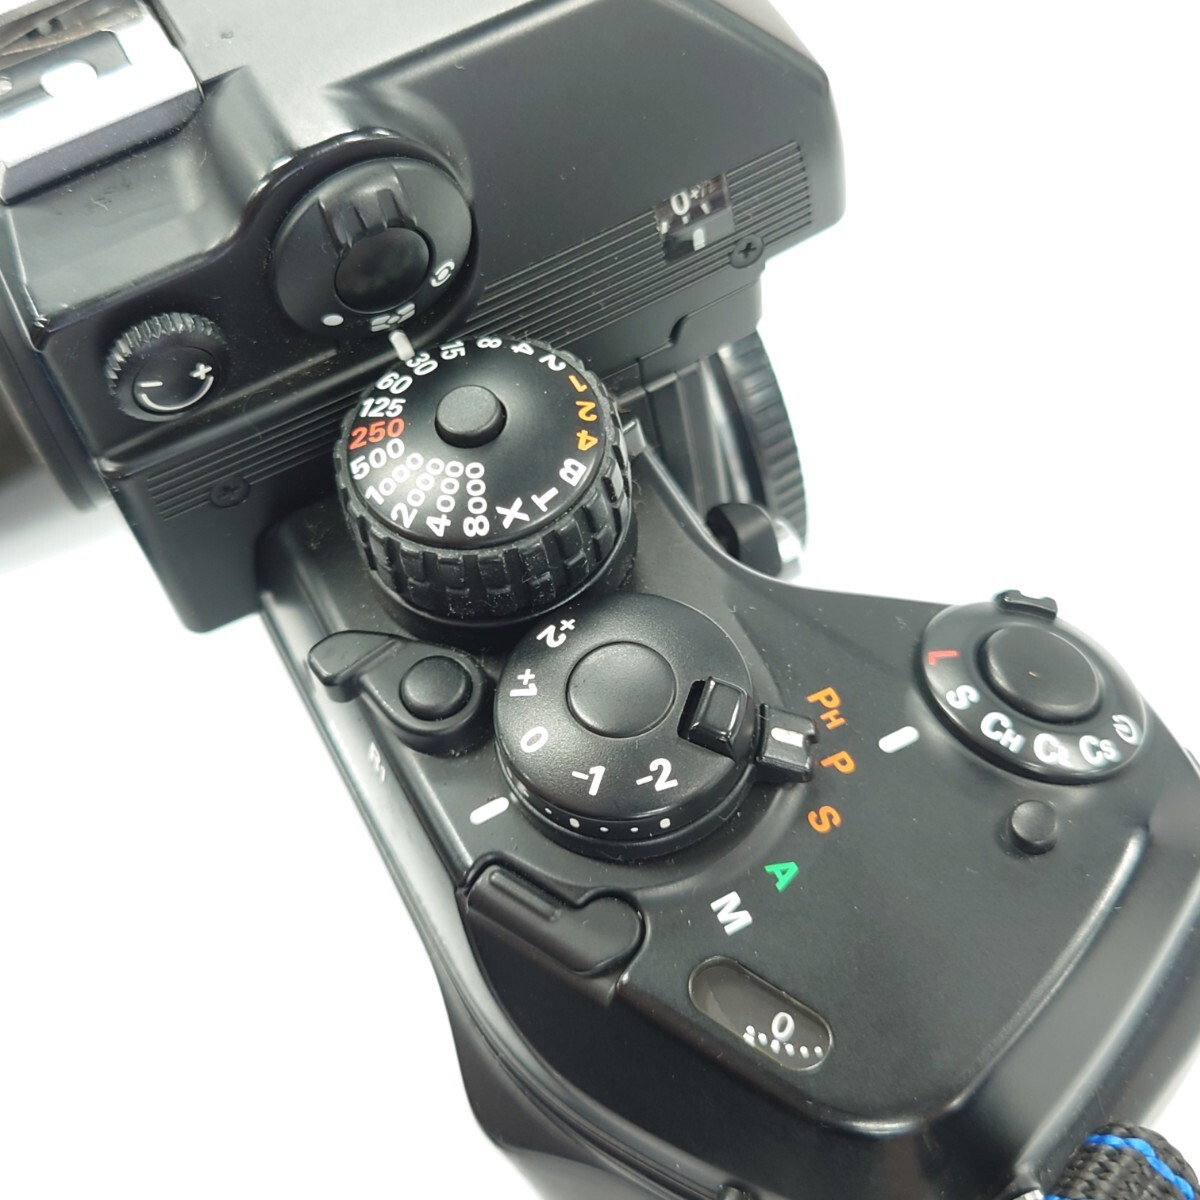 I1065 フィルムカメラ Nikon F4 ニコン カメラ 中古 ジャンク品 訳あり_画像7